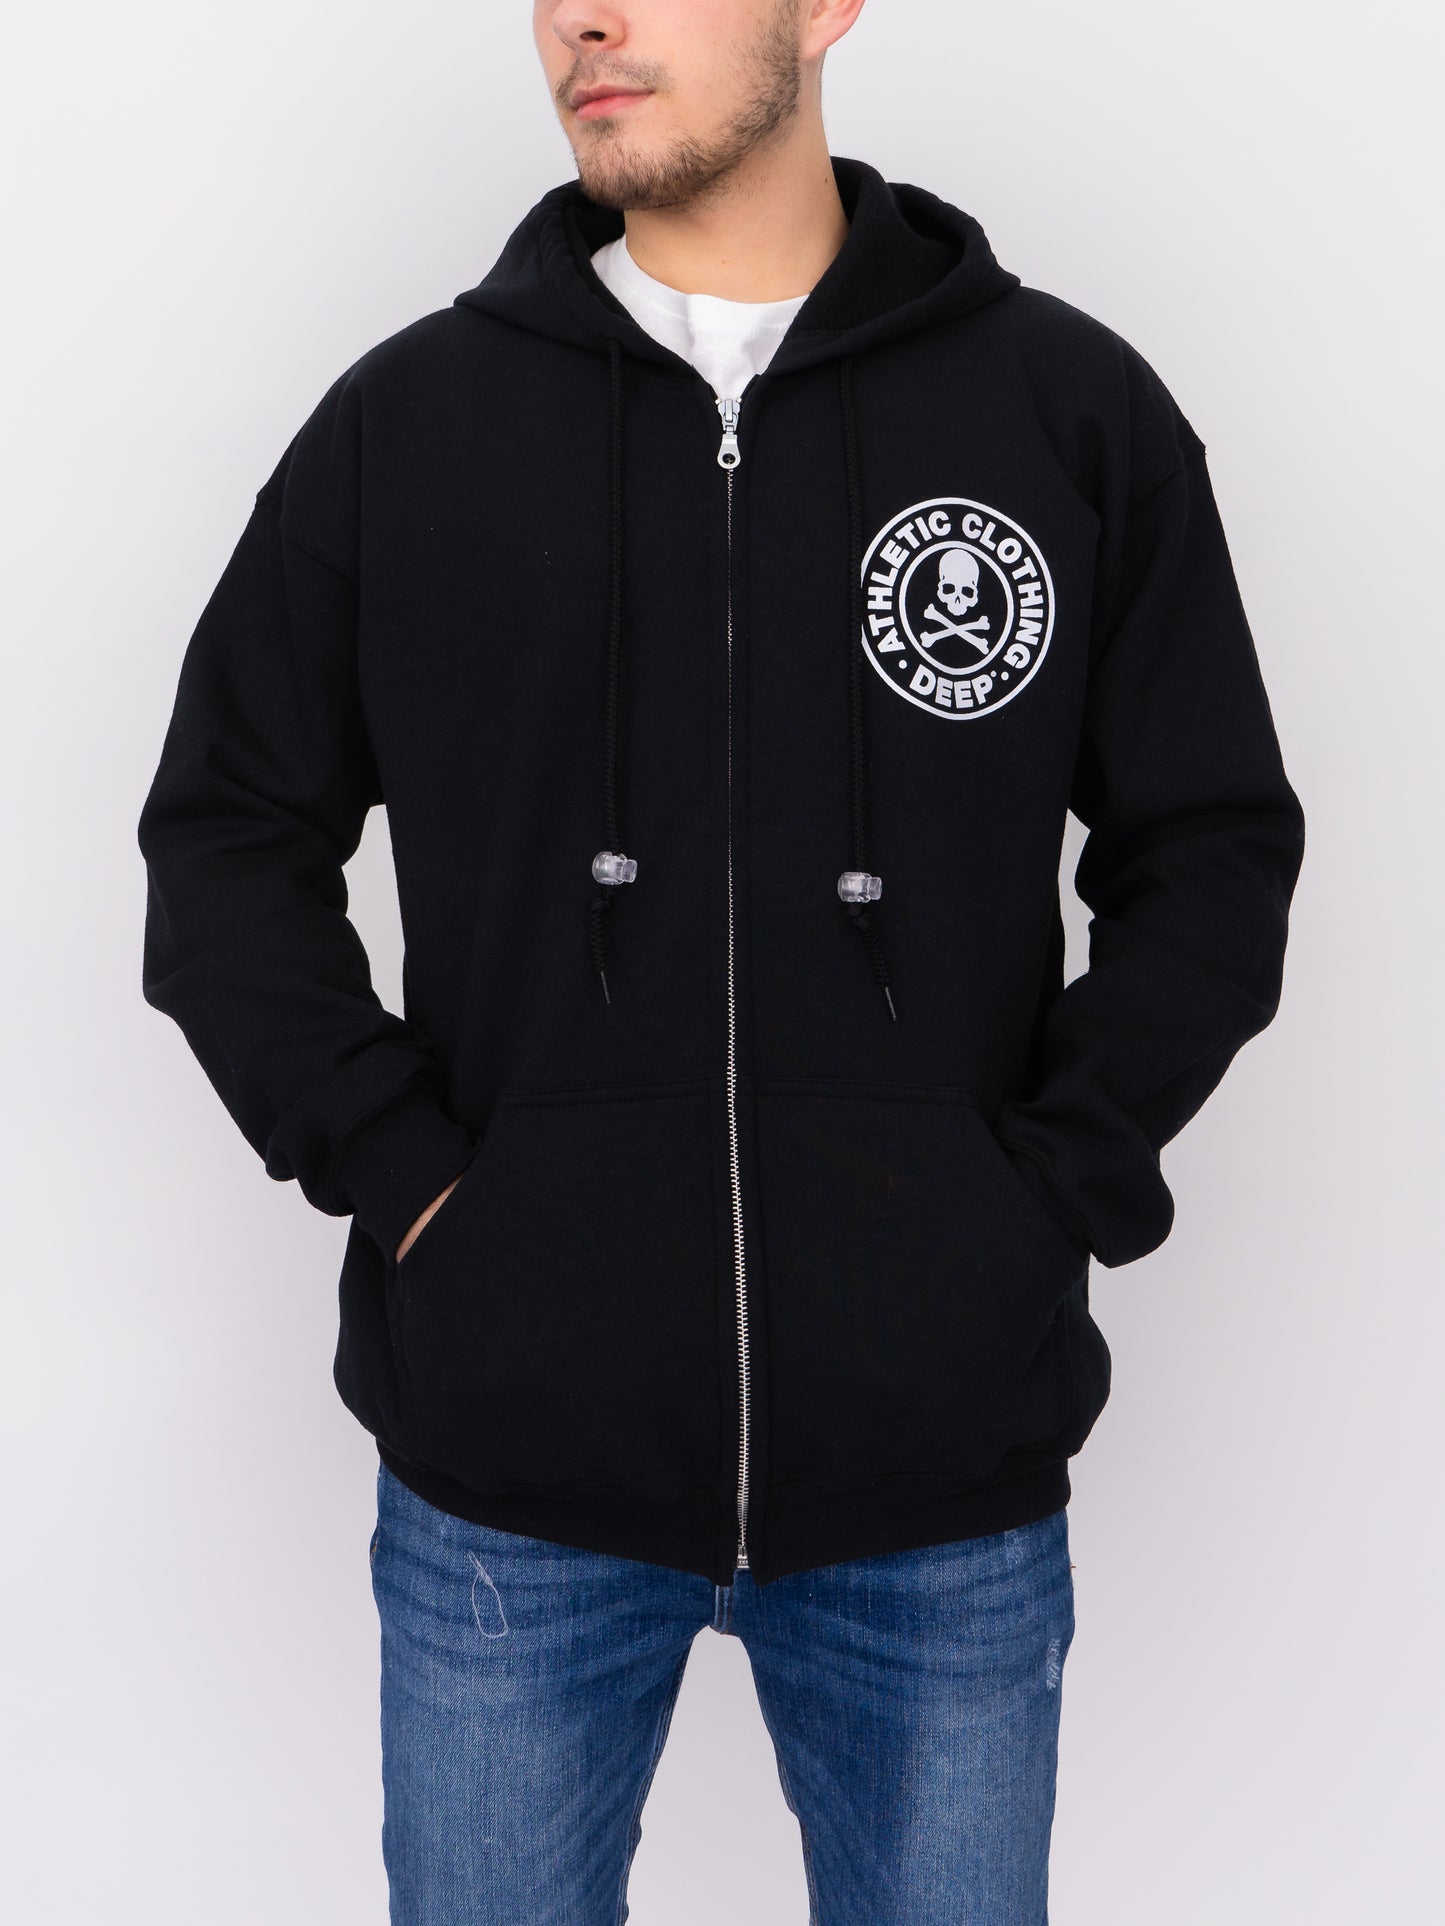 Athletic Hooded Sweatshirt (Zip) - Black - DEEP Clothing